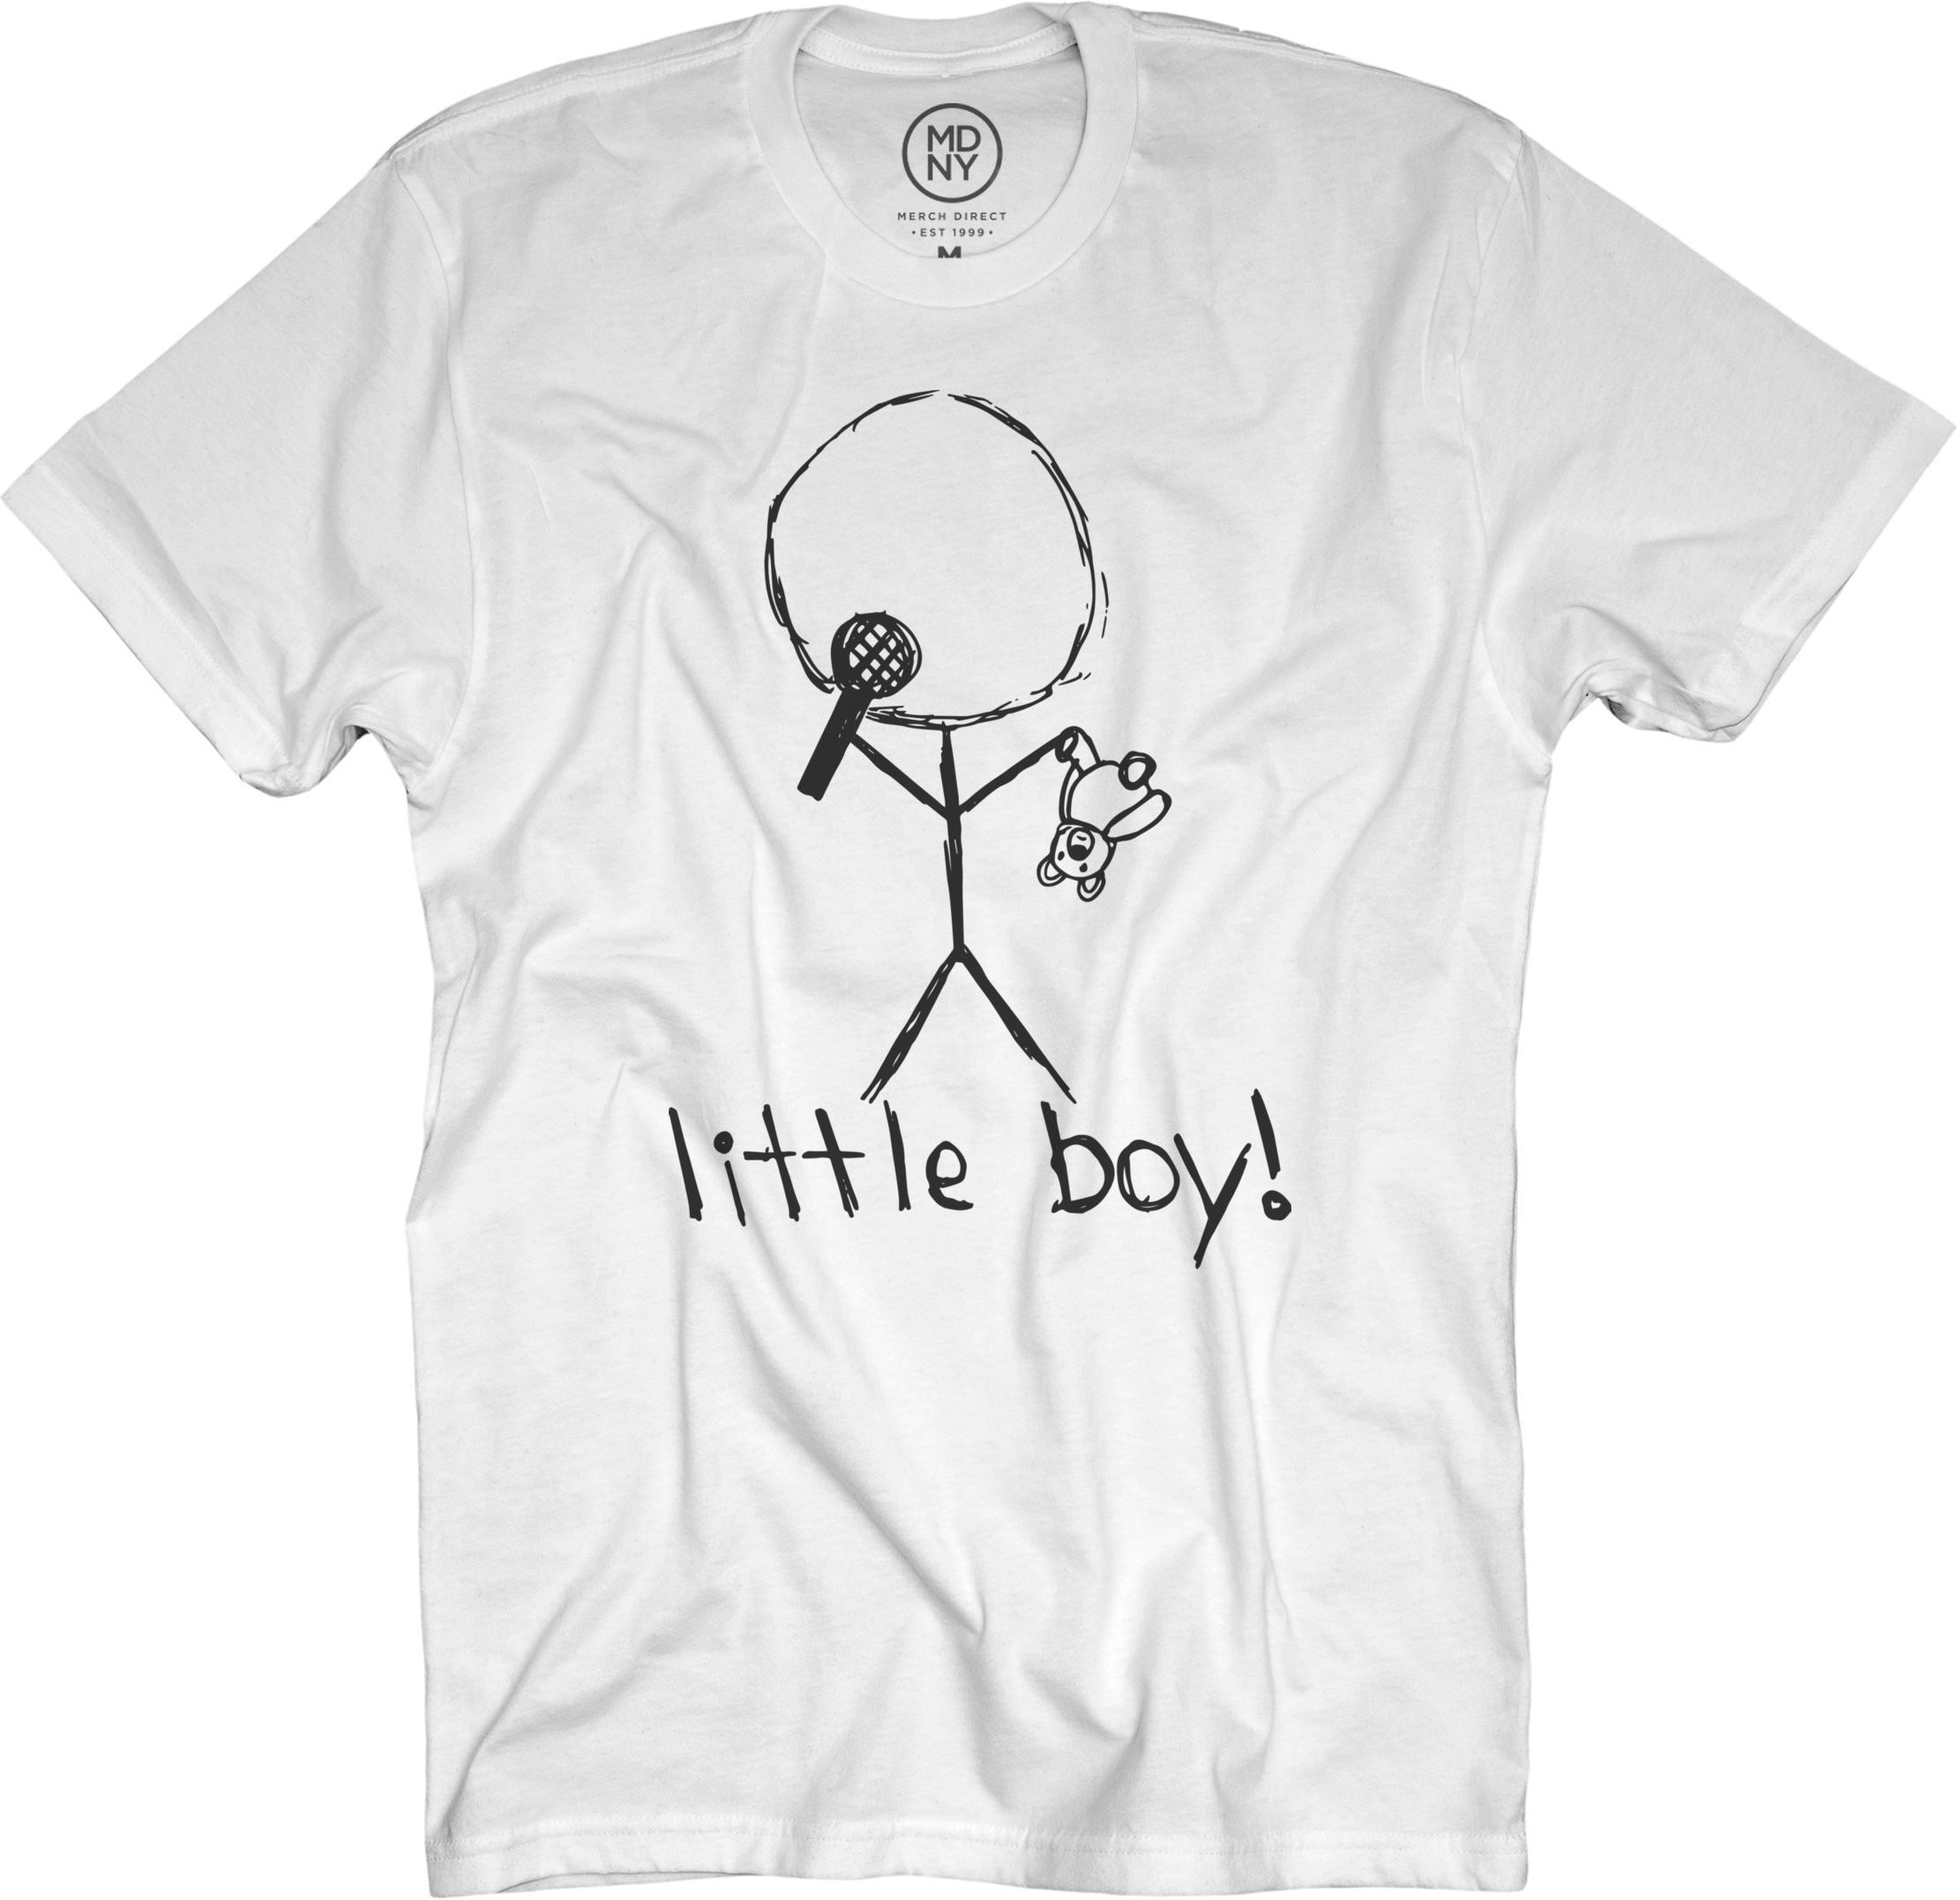 Little Boy White T-shirt $25 - Little Boy Merch Clipart (2222x2154), Png Download